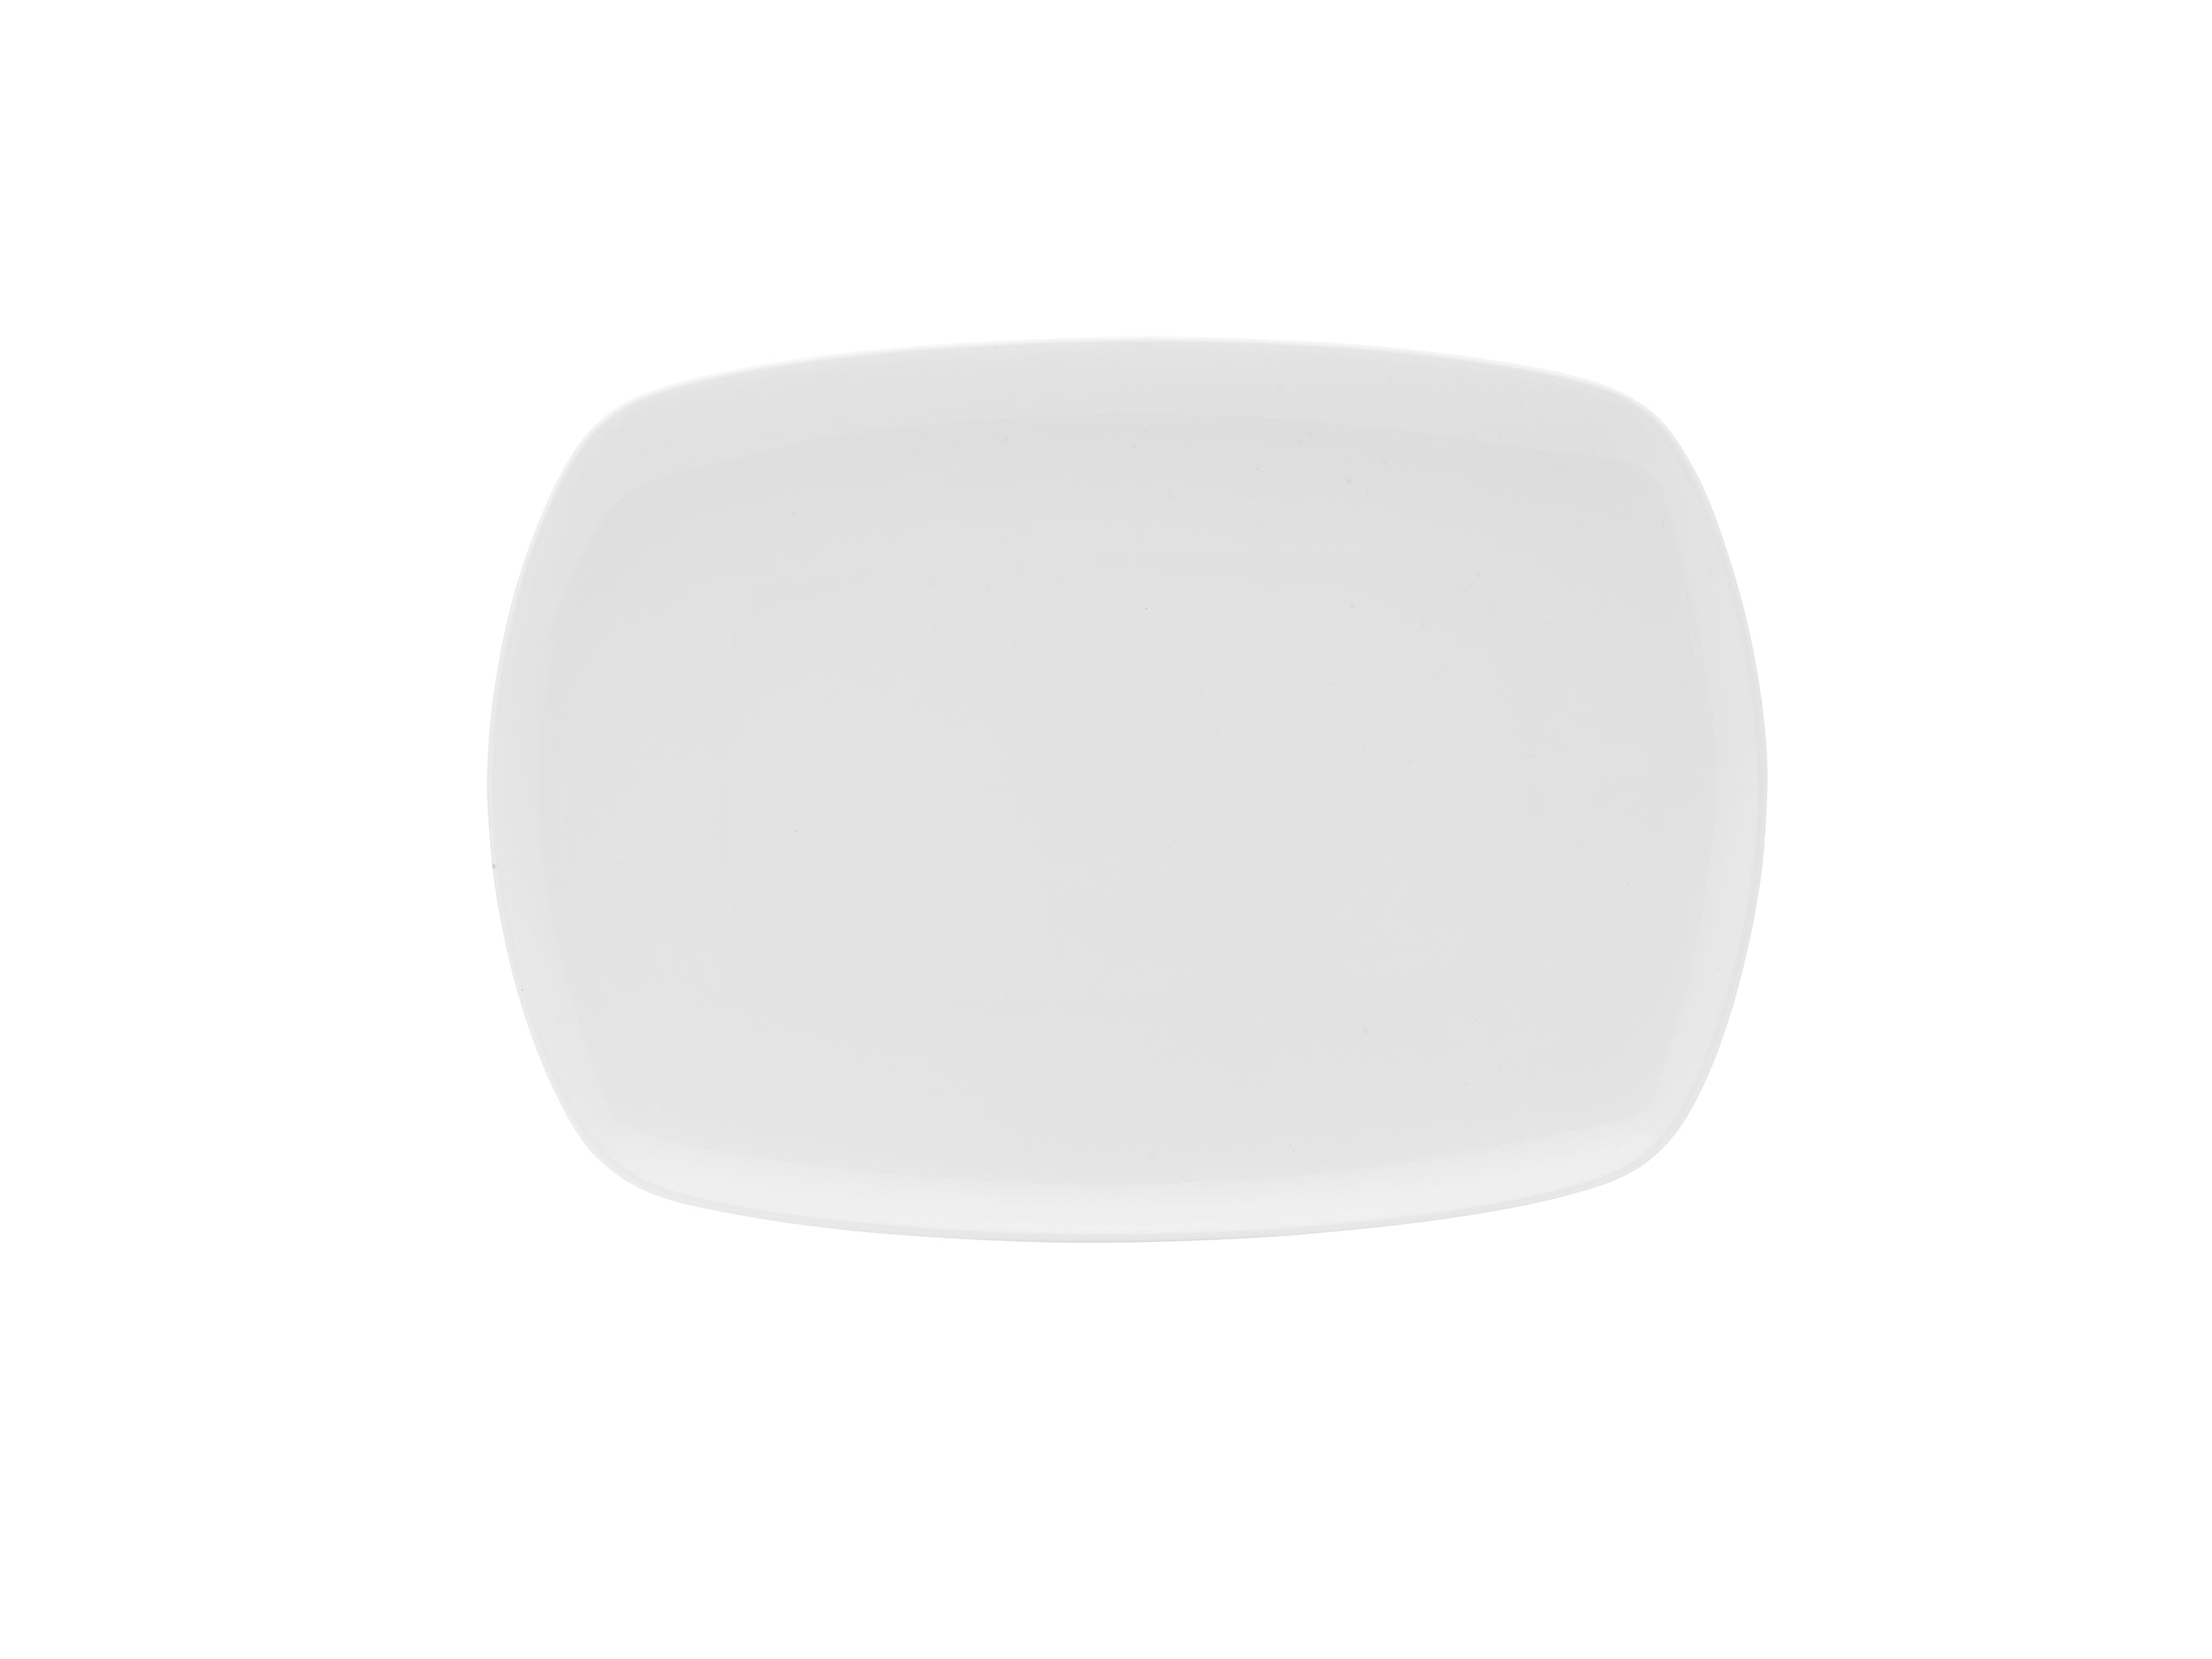 Lola Bone China Rectangular Platter 12x6" White